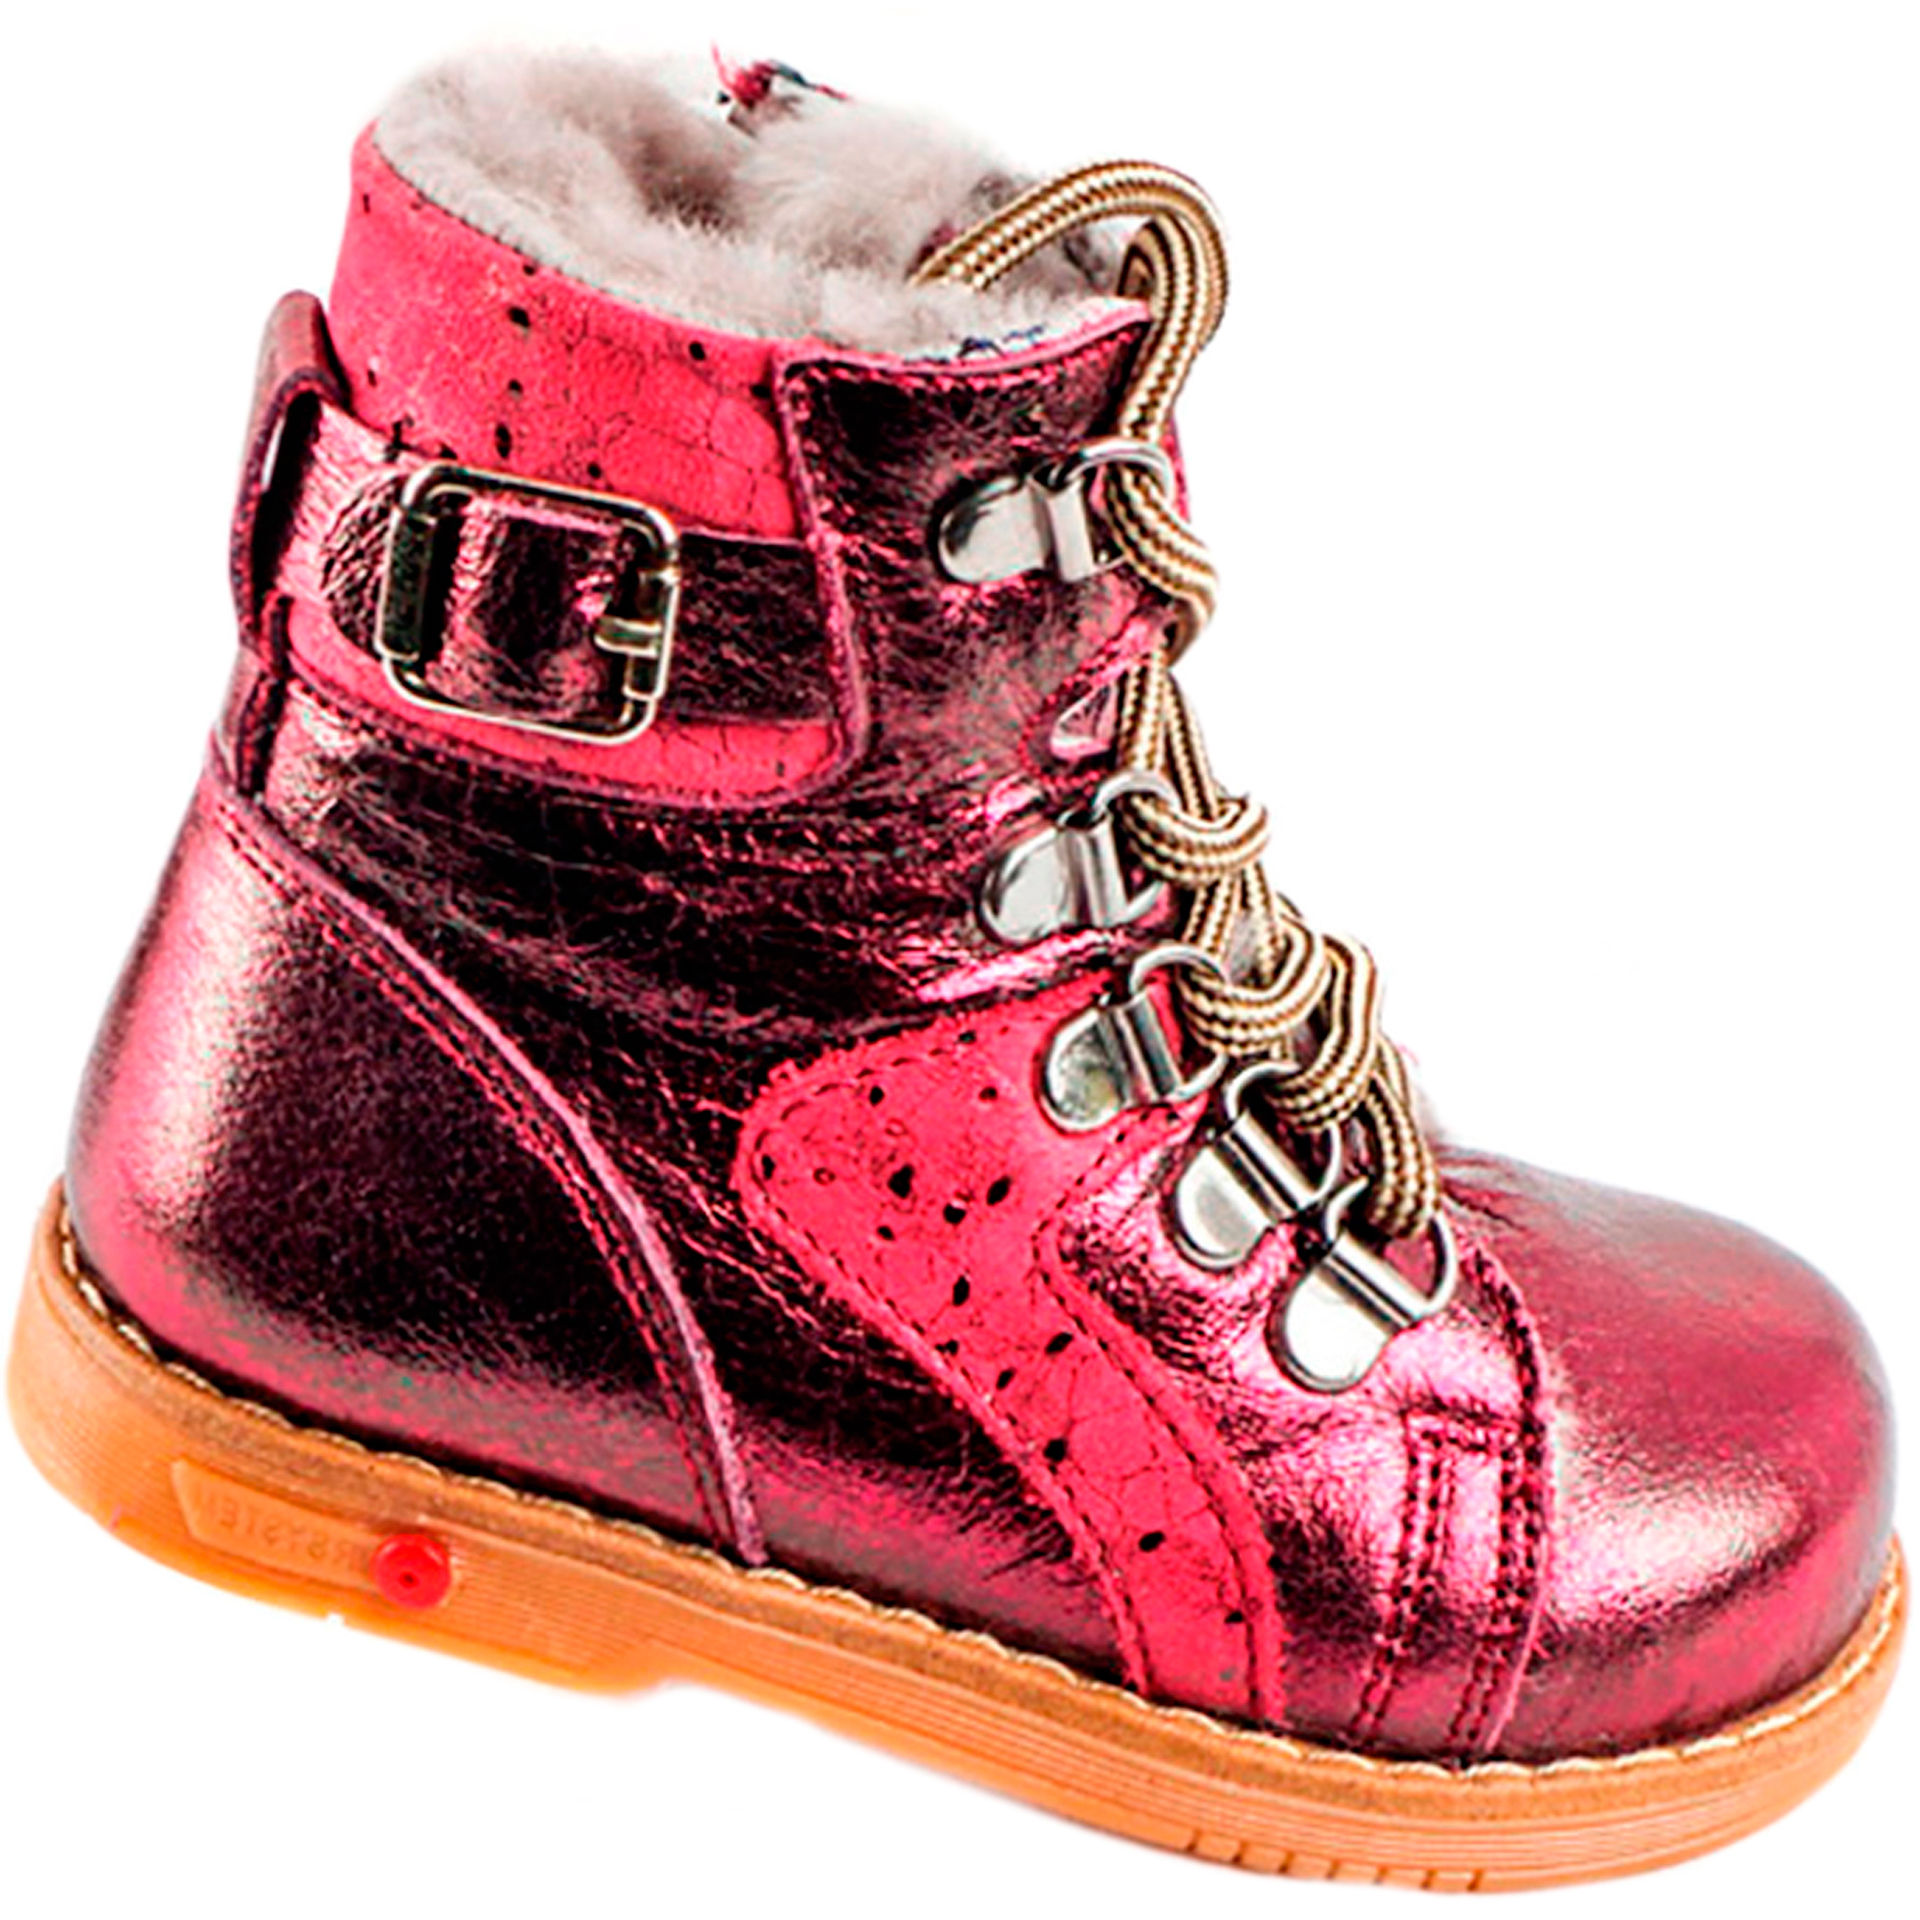 Tutubi Зимние ботинки детские (1269) материал Натуральная кожа, цвет Красный  для девочки 21-29 размеры – Sole Kids, Днепр